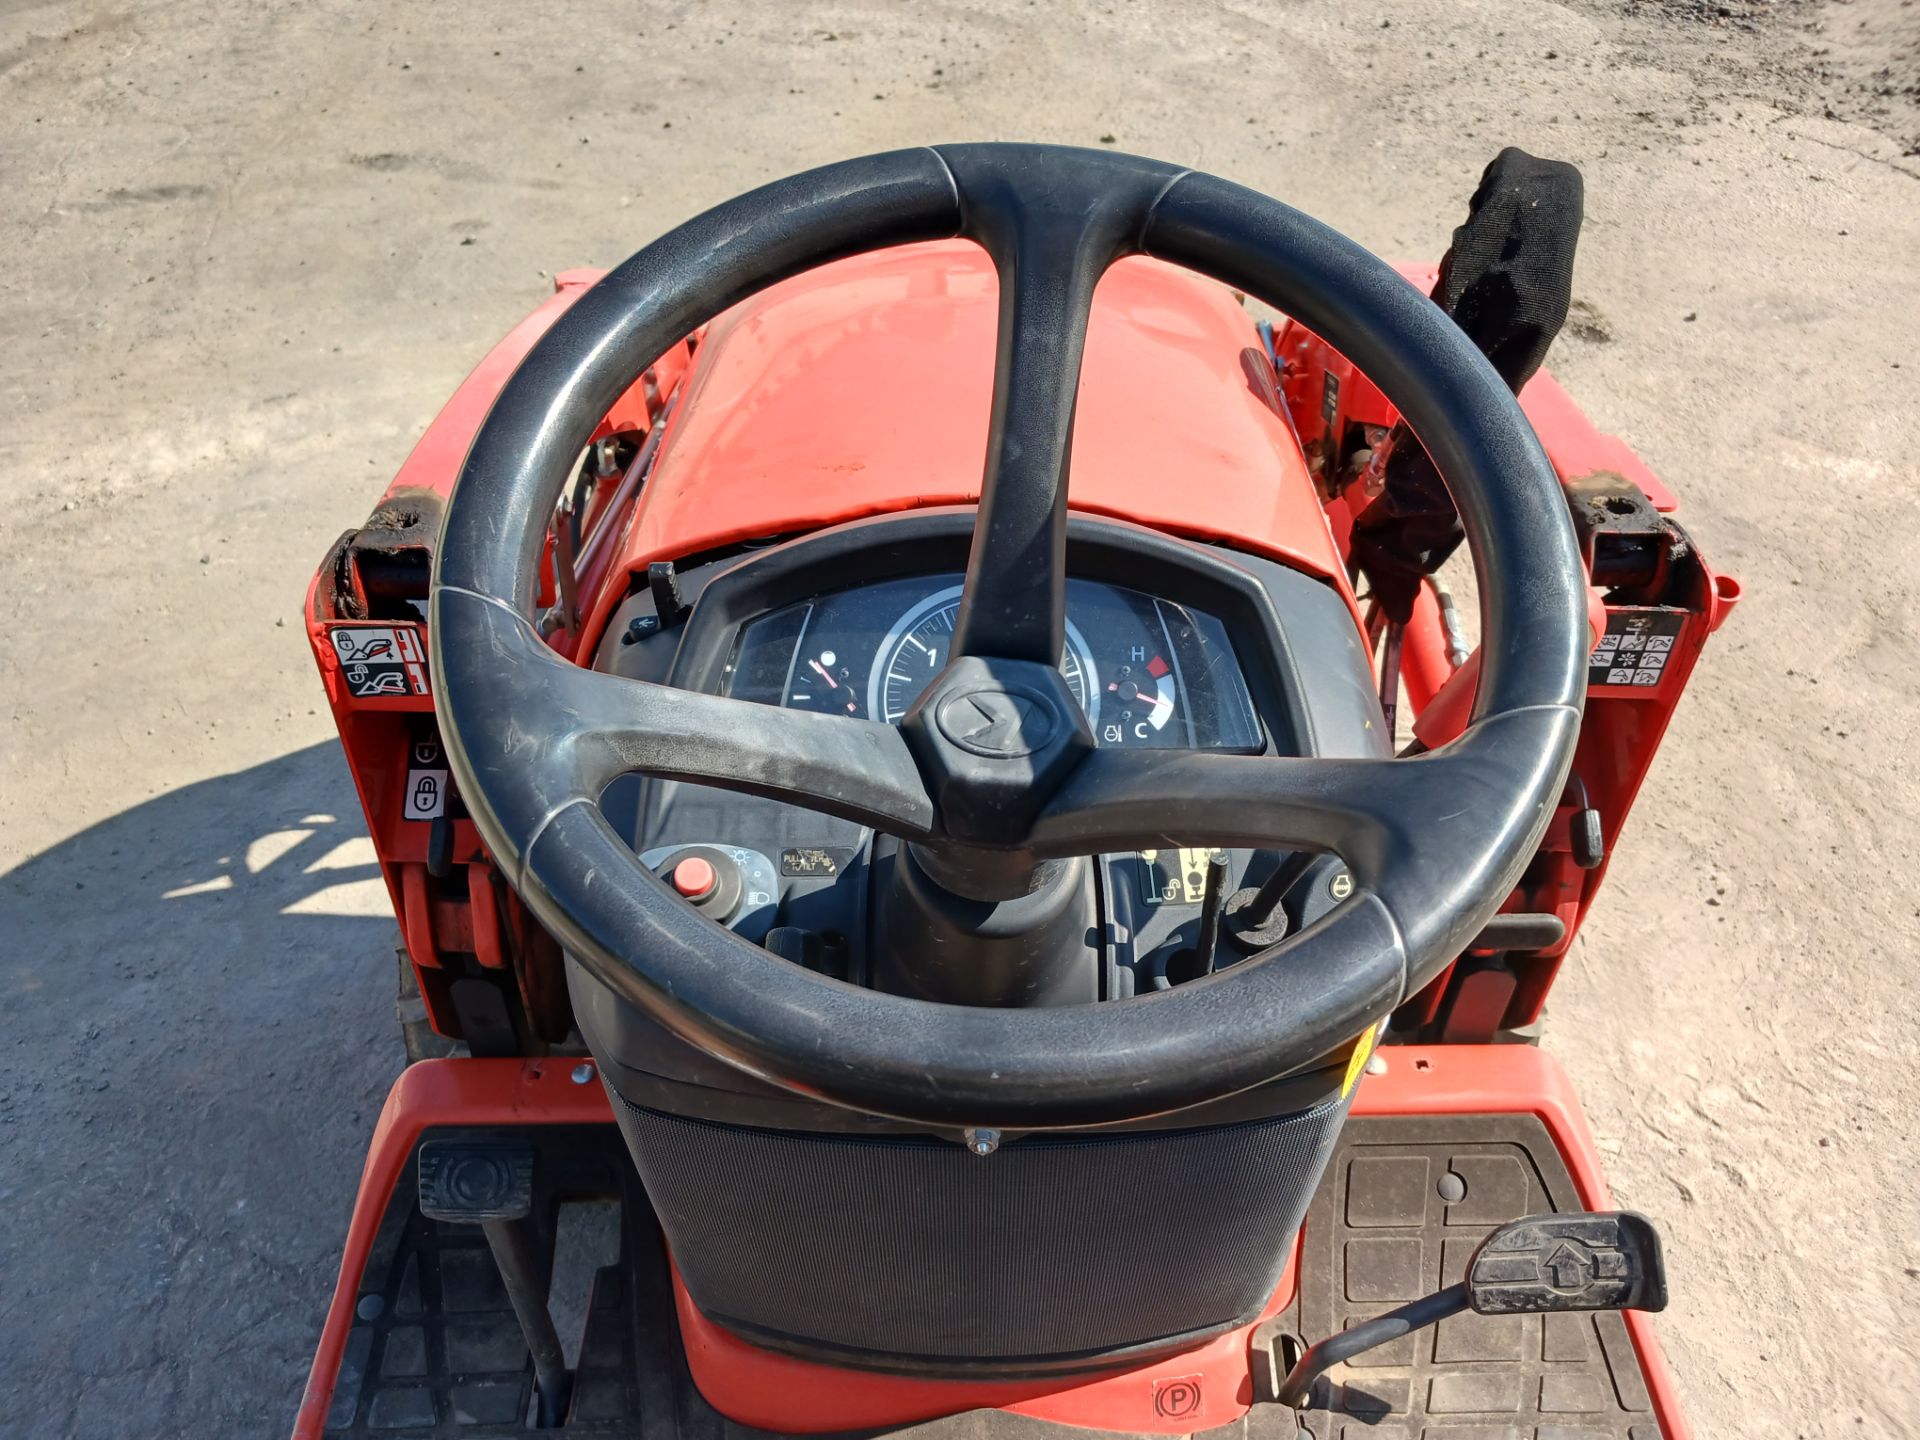 2019 Kubota BX23S Backhoe Loader Tractor - Image 13 of 22